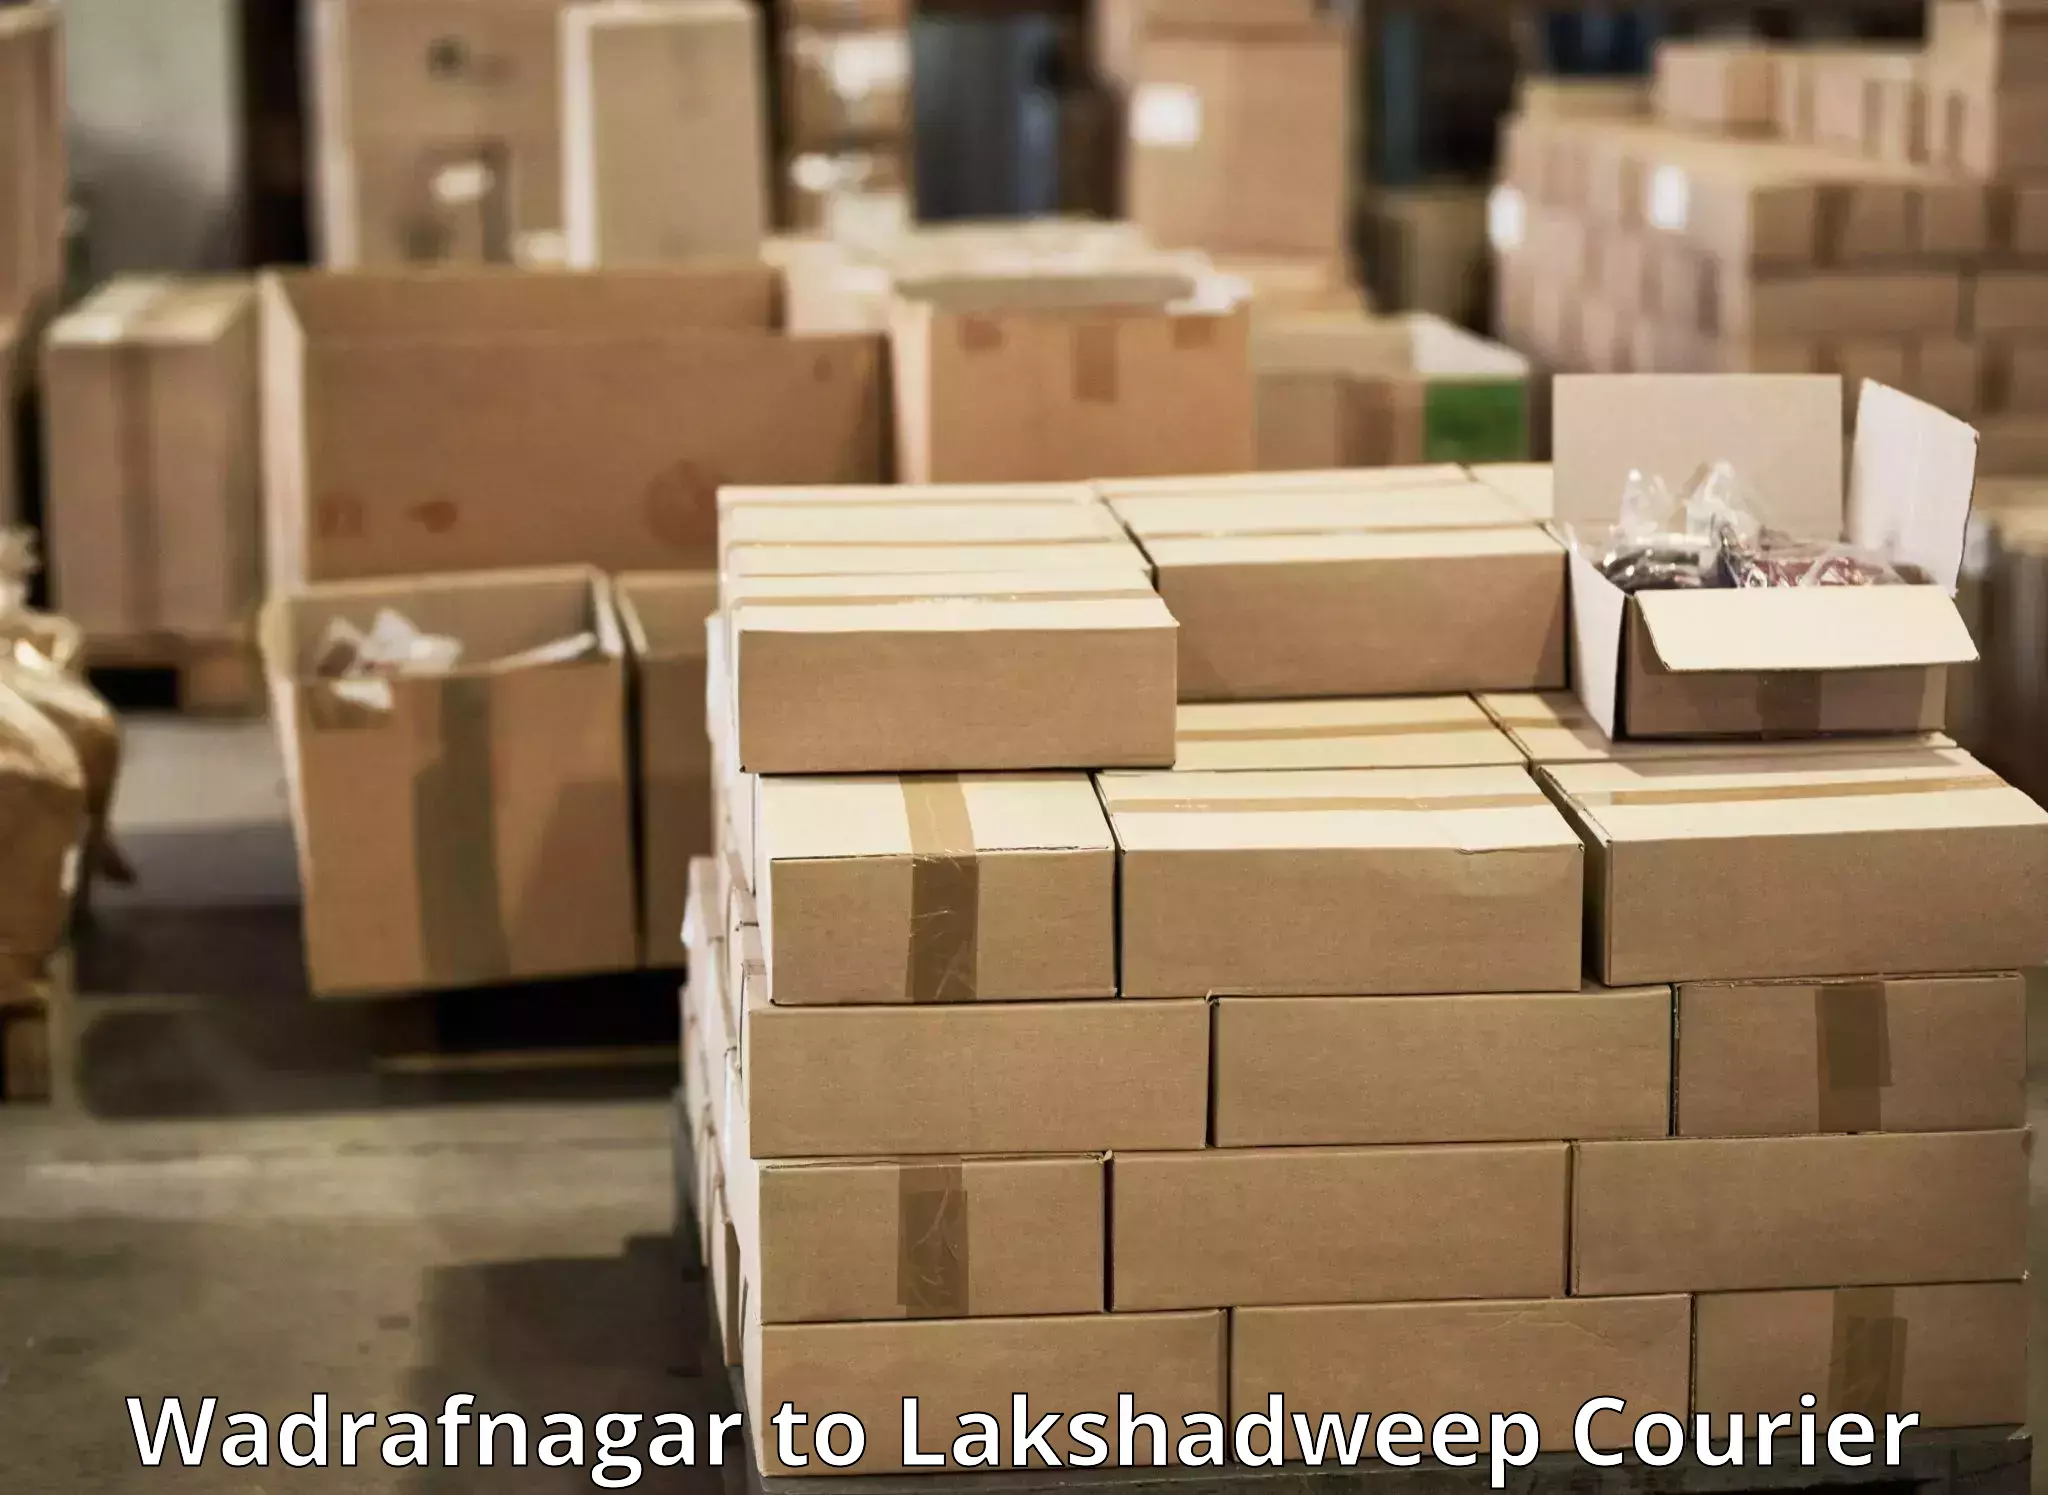 Modern delivery methods in Wadrafnagar to Lakshadweep